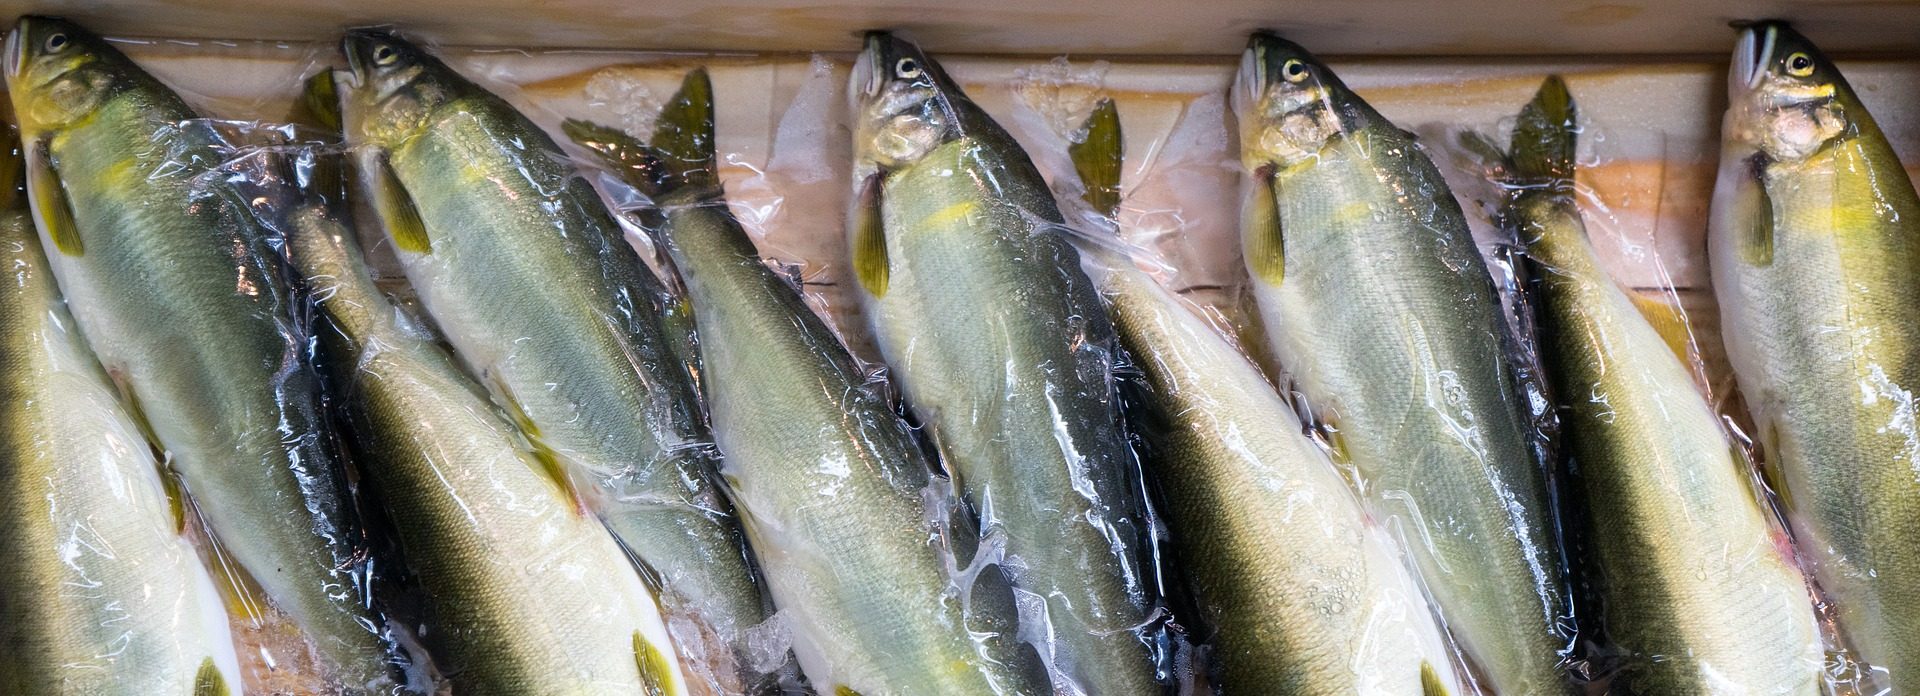 otravlenie ryboj i moreproduktami